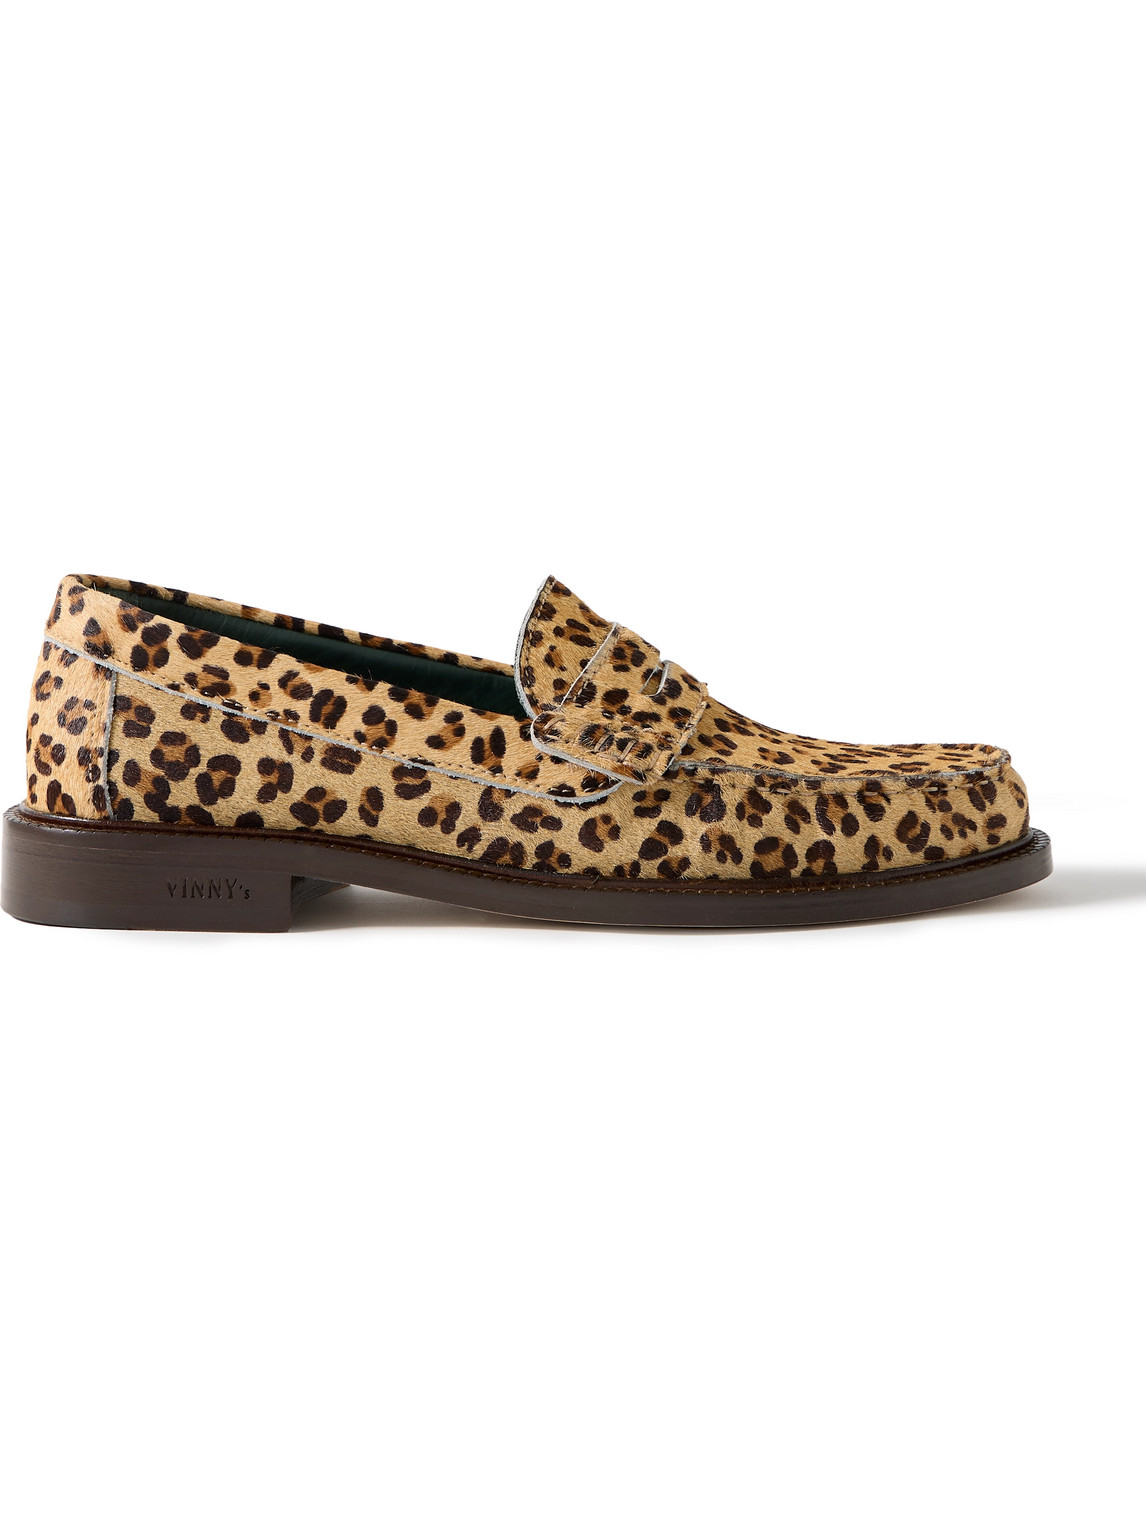 Vinny's Yardee Leopard-print Calf-hair Penny Loafers In Brown